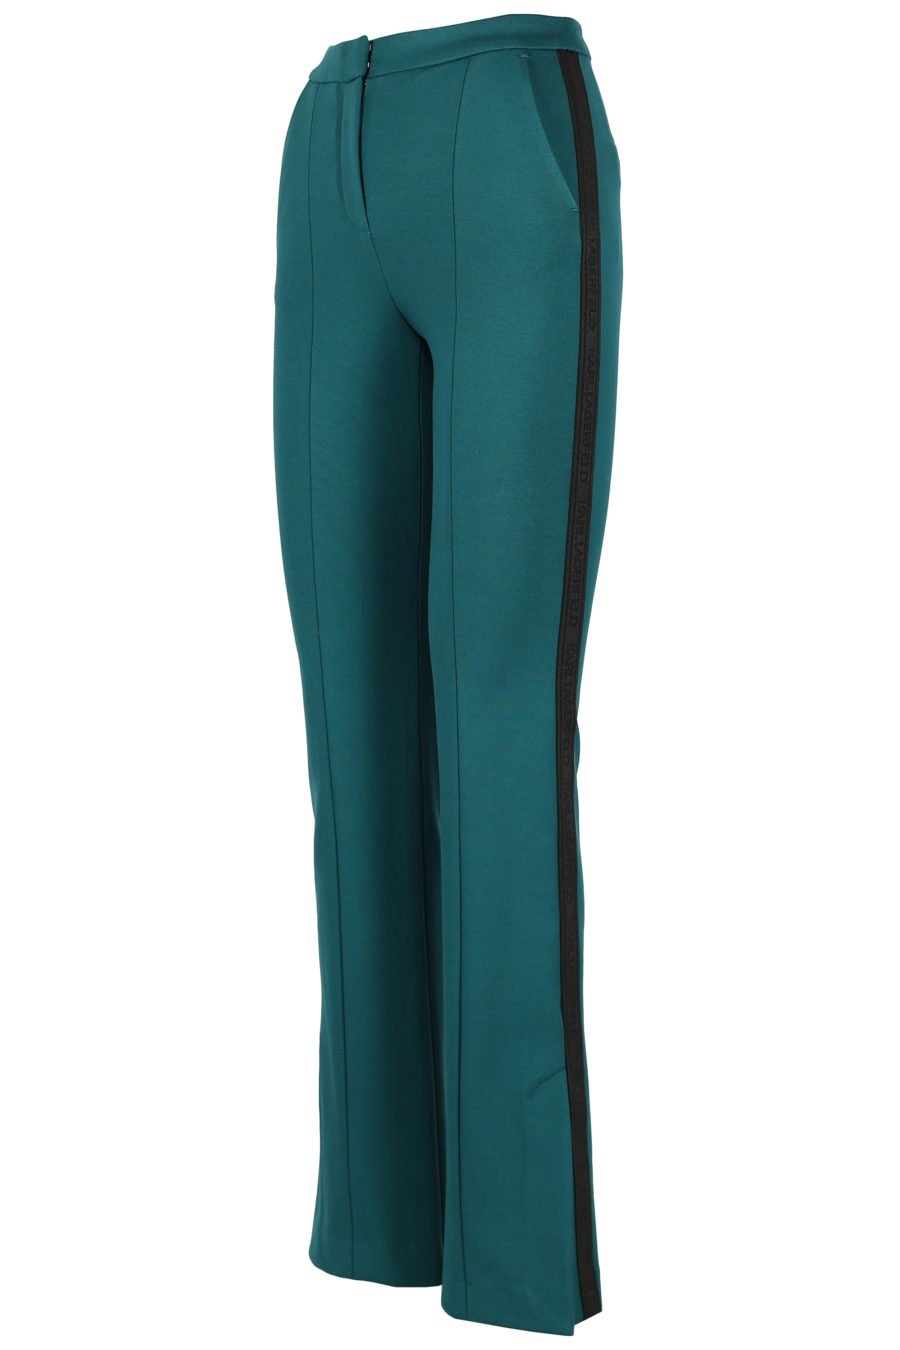 Pantalón verde con bolsillos - IMG 3214